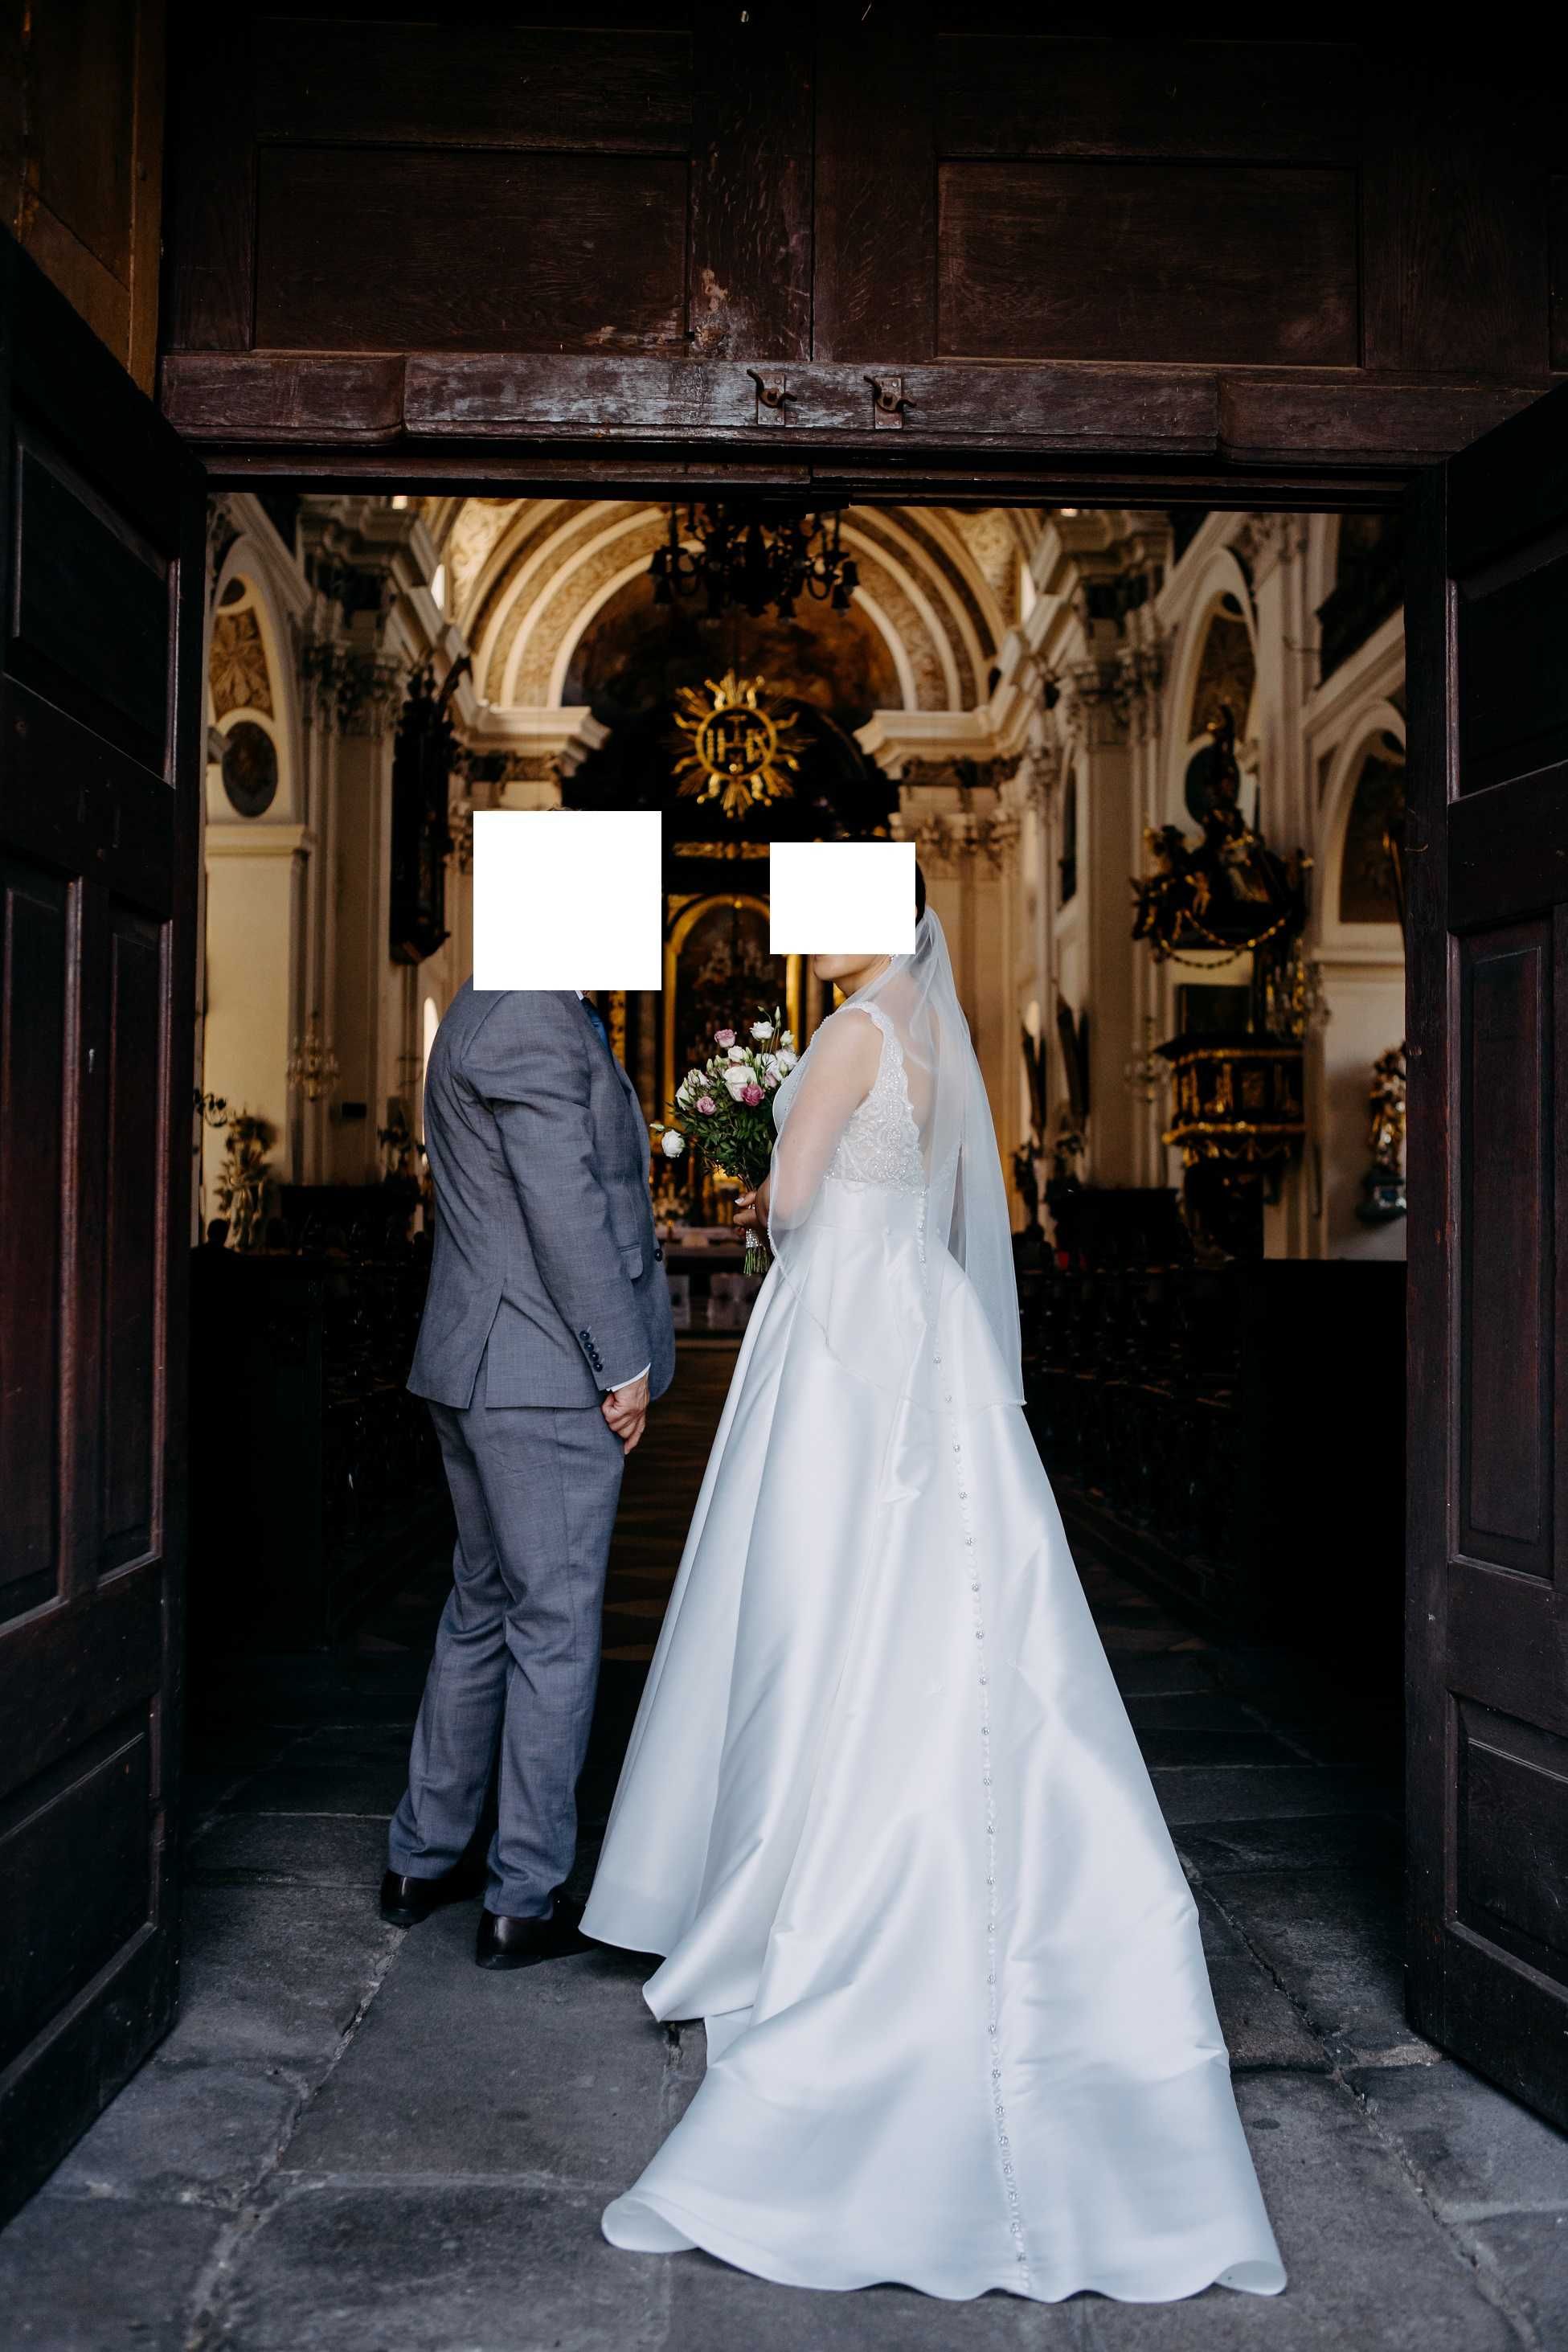 Suknia ślubna przepiękna - 1500 zł (cena do negocjacji)